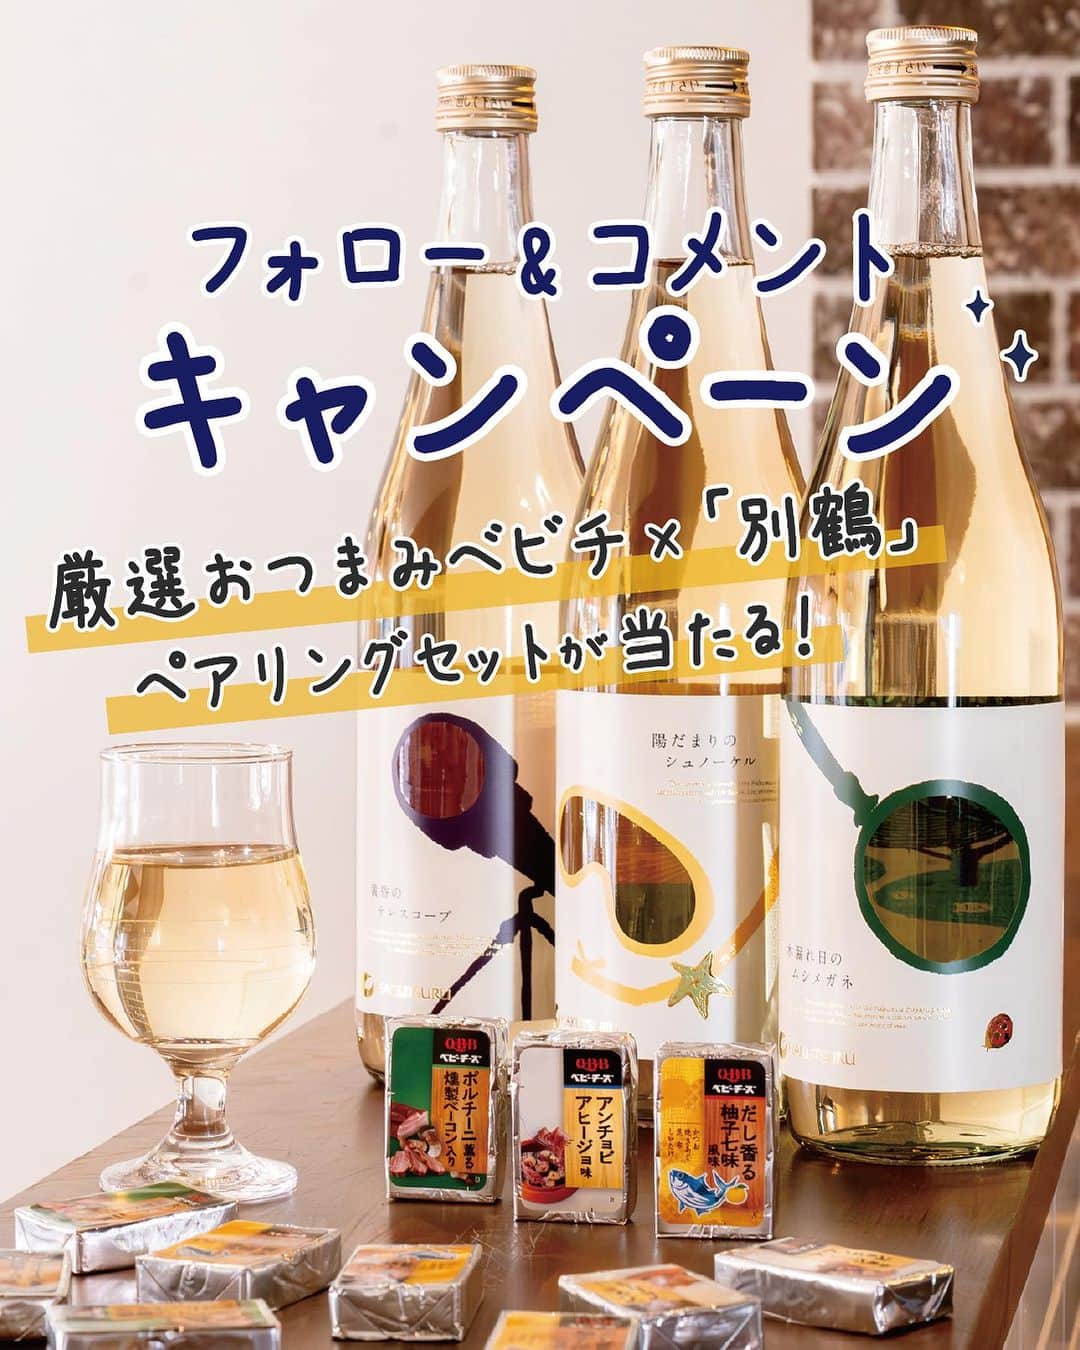 白鶴酒造株式会社のインスタグラム：「ㅤㅤㅤㅤㅤㅤㅤ ㅤㅤたくさんのご応募ありがとうございました🧀💓 キャンペーン応募は締切りました✂️  🧀🍶━━━━━━━━━━━━━━━━━━━━━ ㅤㅤ 　　　　　フォロー&コメントで3名様に 　チーズと日本酒の豪華ペアリングセットが当たる！ ━━━━━━━━━━━━━━━━━━━━━🍶🧀  @qbb_official 🤝 @hakutsuru_official 「別鶴」 フォロー&コメントキャンペーン🎉🎉  @hakutsuru_official の若手社員が “若い人にもっと日本酒を楽しんでほしい”という 思いから立ち上げた日本酒ブランド「別鶴」(べっかく)✨  今回、「別鶴」プロジェクトメンバーの方に、 QBB厳選おつまみベビチに合う 日本酒を選んでいただきました🙌  そんなチーズと日本酒の豪華ペアリングセットを 抽選で3名様にプレゼント🎁  新しいペアリングをぜひ体験ください☺️💕 たくさんのご応募をお待ちしております🤳💬  🧀••┈┈┈┈┈┈┈┈┈┈┈┈┈┈┈┈••🧀 ㅤ ✏️応募方法 ❶ @qbb_official と @hakutsuru_official  の2アカウントをフォロー🤝  ❷ この投稿のコメントで、 「どのペアリングが1番気になるか」 を教えてね 💬  ① 【だし香る柚子七味風味🧀  ㅤㅤㅤ　　　　　　　　　　× 木漏れ日のムシメガネ🔍】   ② 【アンチョビアヒージョ味🧀  ㅤㅤㅤ　　　　　　　　　　× 陽だまりのシュノーケル🐚】  ③ 【ポルチーニ薫る燻製ベーコン入り🧀    ㅤㅤㅤ　　　　　　　　　　× 黄昏のテレスコープ🔭】  詳しくは投稿画像3枚目以降をcheck👀  🎁プレゼント QBB厳選おつまみベビチと「別鶴」のペアリングセット を抽選で3名様にプレゼント🎉  ＜ペアリングセット＞ 🧀QBB厳選おつまみベビーチーズ3種 🍶白鶴 別鶴3種飲み比べセット  🗓応募期間 2023年10月12日（木）～ 10月25日（水）  💌当選発表 当選者の方のみに、 @qbb_official  より InstagramのDM（ダイレクトメッセージ）で ご連絡を差し上げます。  🧀••┈┈┈┈┈┈┈┈┈┈┈┈┈┈┈┈••🧀  QBB厳選おつまみベビチ 🤝 別鶴 おすすめのペアリングをご紹介🙋‍♀️  ① 【だし香る柚子七味風味🧀  ㅤㅤㅤ　　　　　　　　　　 ㅤㅤㅤ× 木漏れ日のムシメガネ🔍】   柚子の爽やかな風味を、木漏れ日のムシメガネの ボタニカルな香りと酸味が倍増させます🌿  さわやかな味わいを感じた後に、 七味由来のピリッとくる辛味がアクセントになり、 心地よさを感じます😌  ② 【アンチョビアヒージョ味🧀  ㅤㅤㅤ　　　　　　　　　　× 陽だまりのシュノーケル🐚】  アンチョビの塩味やアヒージョのガツンとした香味を 陽だまりのシュノーケルのオレンジのような酸味が 引き立たせた後、ビターな後味が口の中をリセット🍊  次の一口がさらに美味しくなります💗  ③ 【ポルチーニ薫る燻製ベーコン入り🧀    ㅤㅤㅤ　　　　　　　　　　× 黄昏のテレスコープ🔭】  ポルチーニのうまみと燻製ベーコンの香ばしさ、 黄昏のテレスコープのまったりした甘味が、 複雑で深いハーモニーを生みます🎼  余韻も長く、週末のご褒美として まったりしたいときにぴったりです💜  🧀••┈┈┈┈┈┈┈┈┈┈┈┈┈┈┈┈••🧀  ⚠️キャンペーン注意事項 ・応募は20歳以上の方に限ります。 ・抽選時にフォローを解除している場合は、 抽選の対象外となりますのでご注意ください。 ・当選連絡のDM送付後、期限を経過しても 一切のご連絡をいただけない場合は、 当選無効とさせていただきます。 ・賞品の発送は、日本国内に限らせていただきます。 ・応募受付状況や抽選結果に関するお問合せには お答えいたしかねますので、予めご了承ください。  #QBB #六甲バター #チーズ #ベビーチーズ #QBBベビーチーズ #白鶴酒造 #白鶴 #別鶴 #日本酒 #おつまみ #晩酌 #おうち居酒屋 #家飲み #宅飲み #ペアリング #キャンペーン #懸賞  #プレゼントキャンペーン #プレゼント企画実施中 #プレゼント企画開催中 #プレゼント企画 #キャンペーン企画 #キャンペーン実施中」